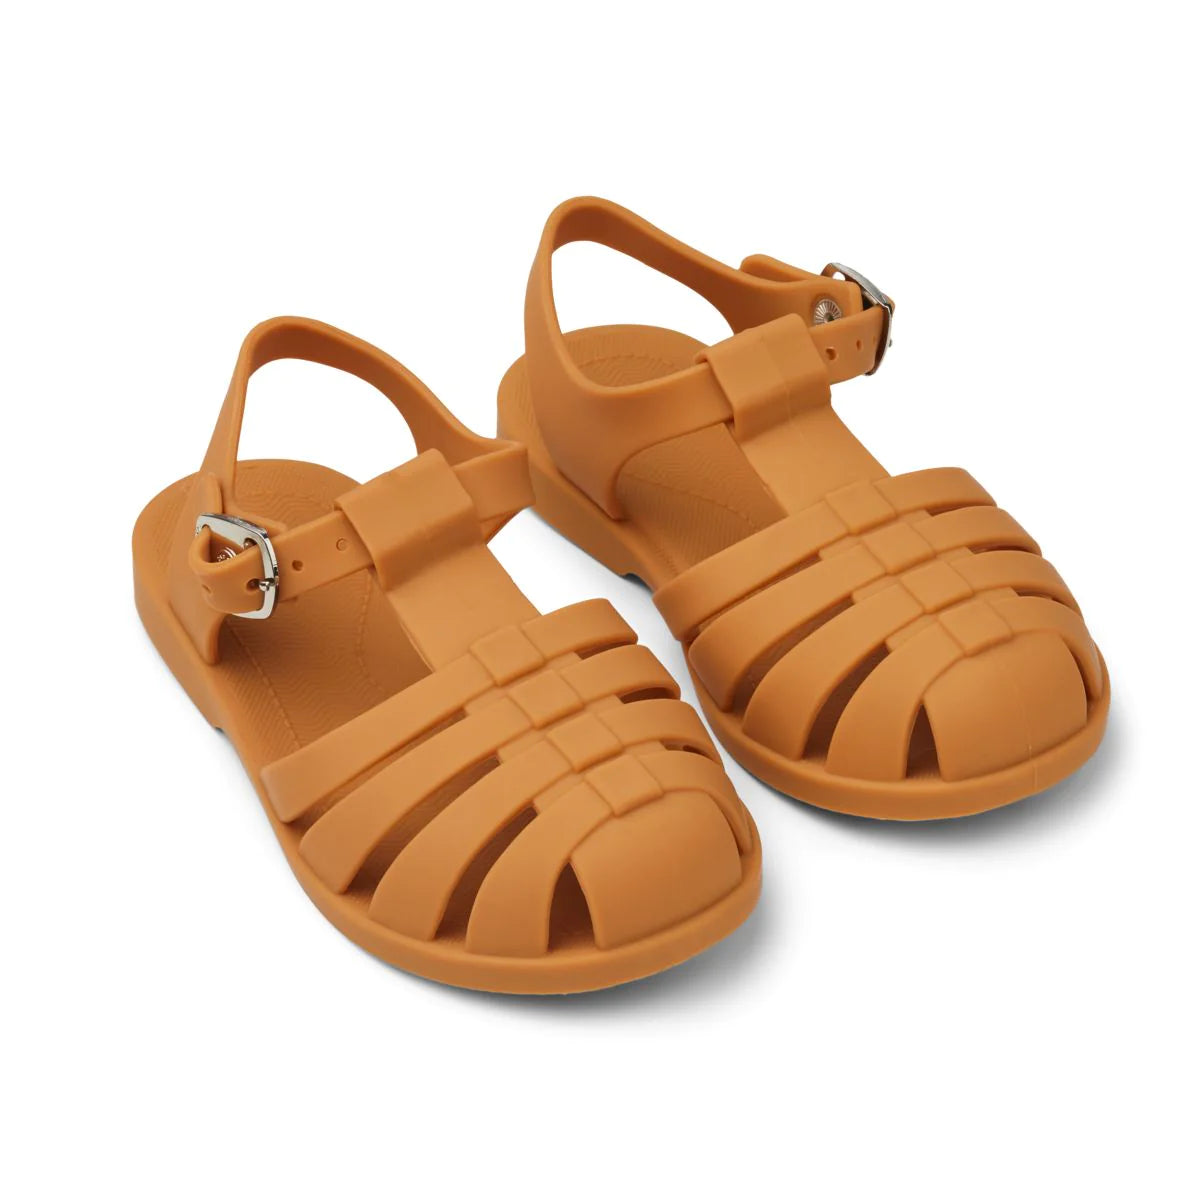 An image of Buy Liewood Bre Beach Sandals - Summer Kids Sandals Mustard / 30